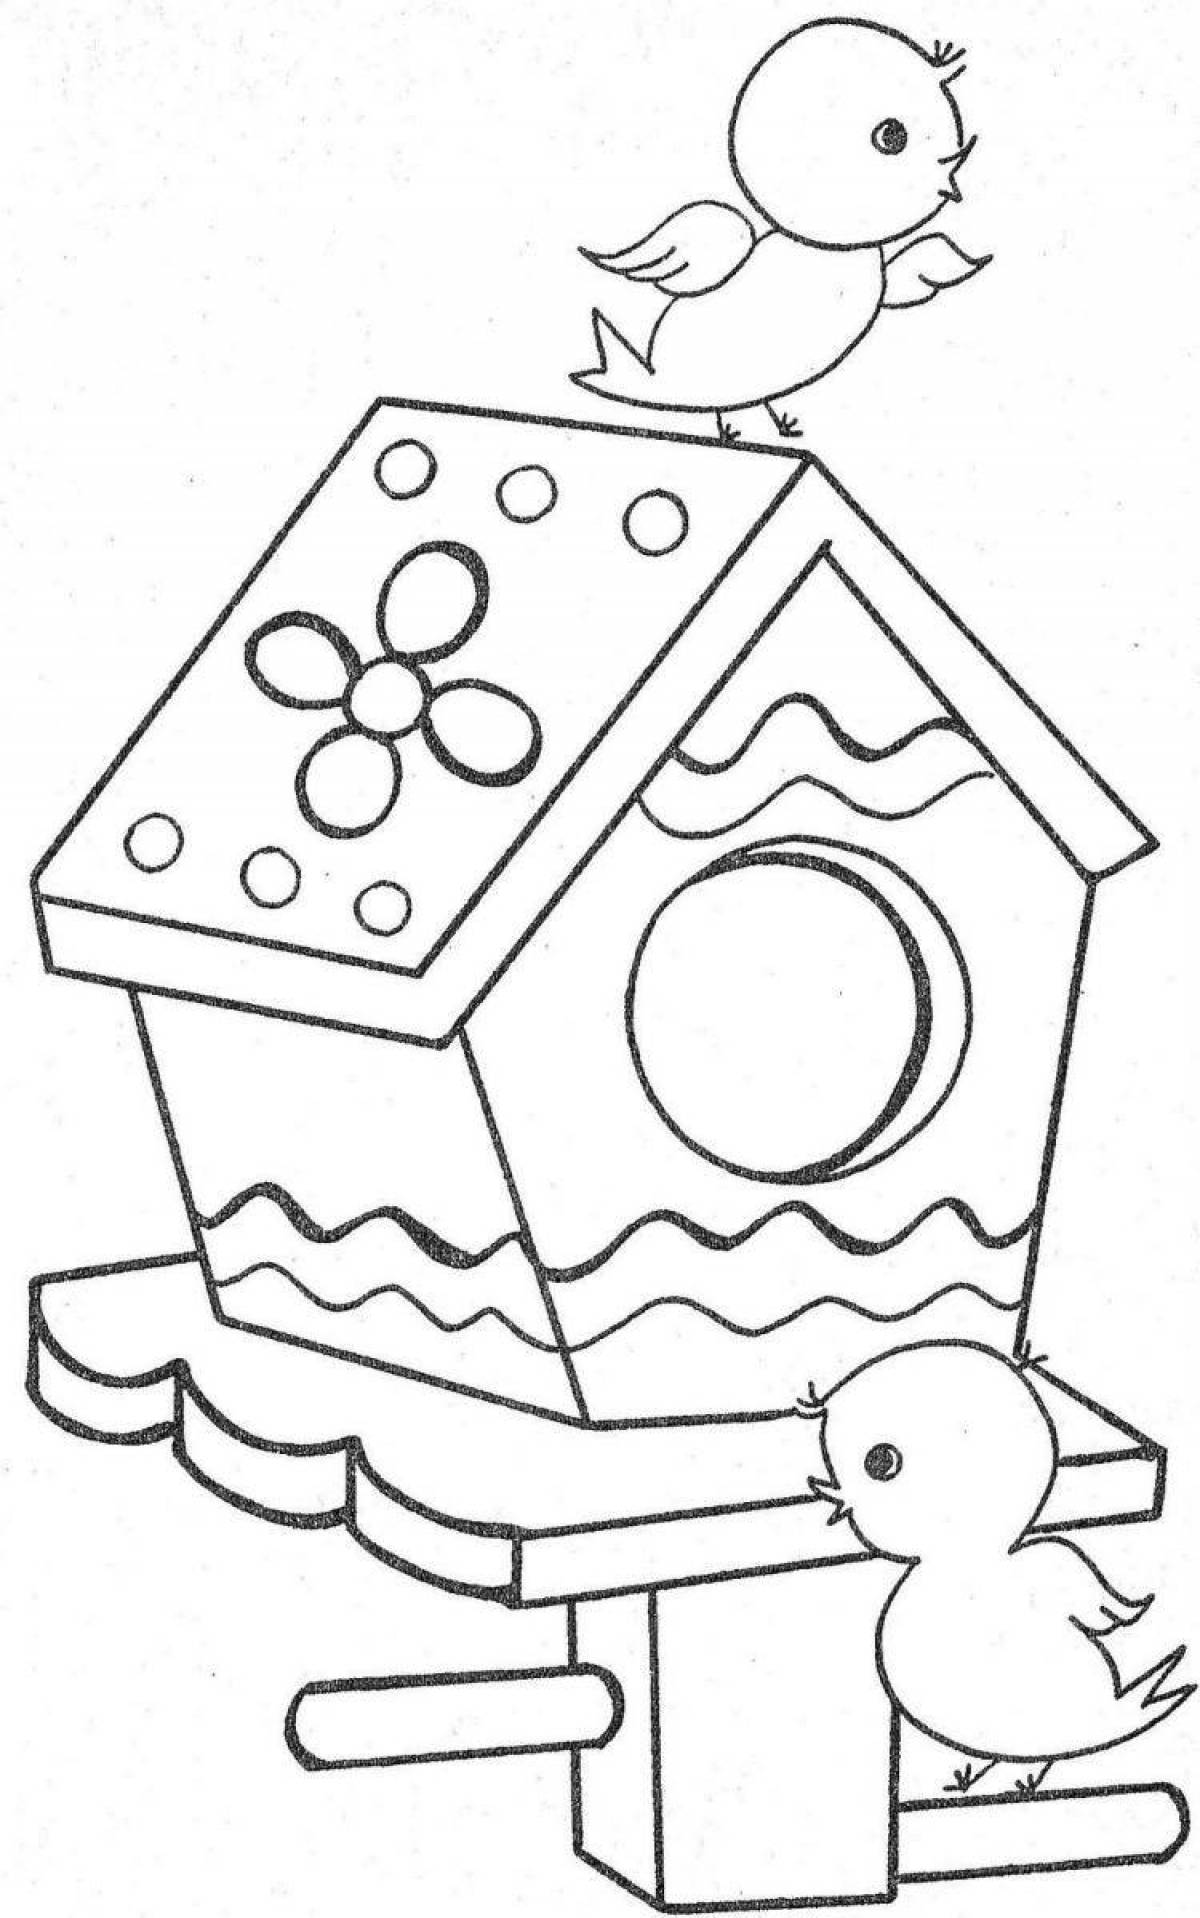 Fun coloring birdhouse